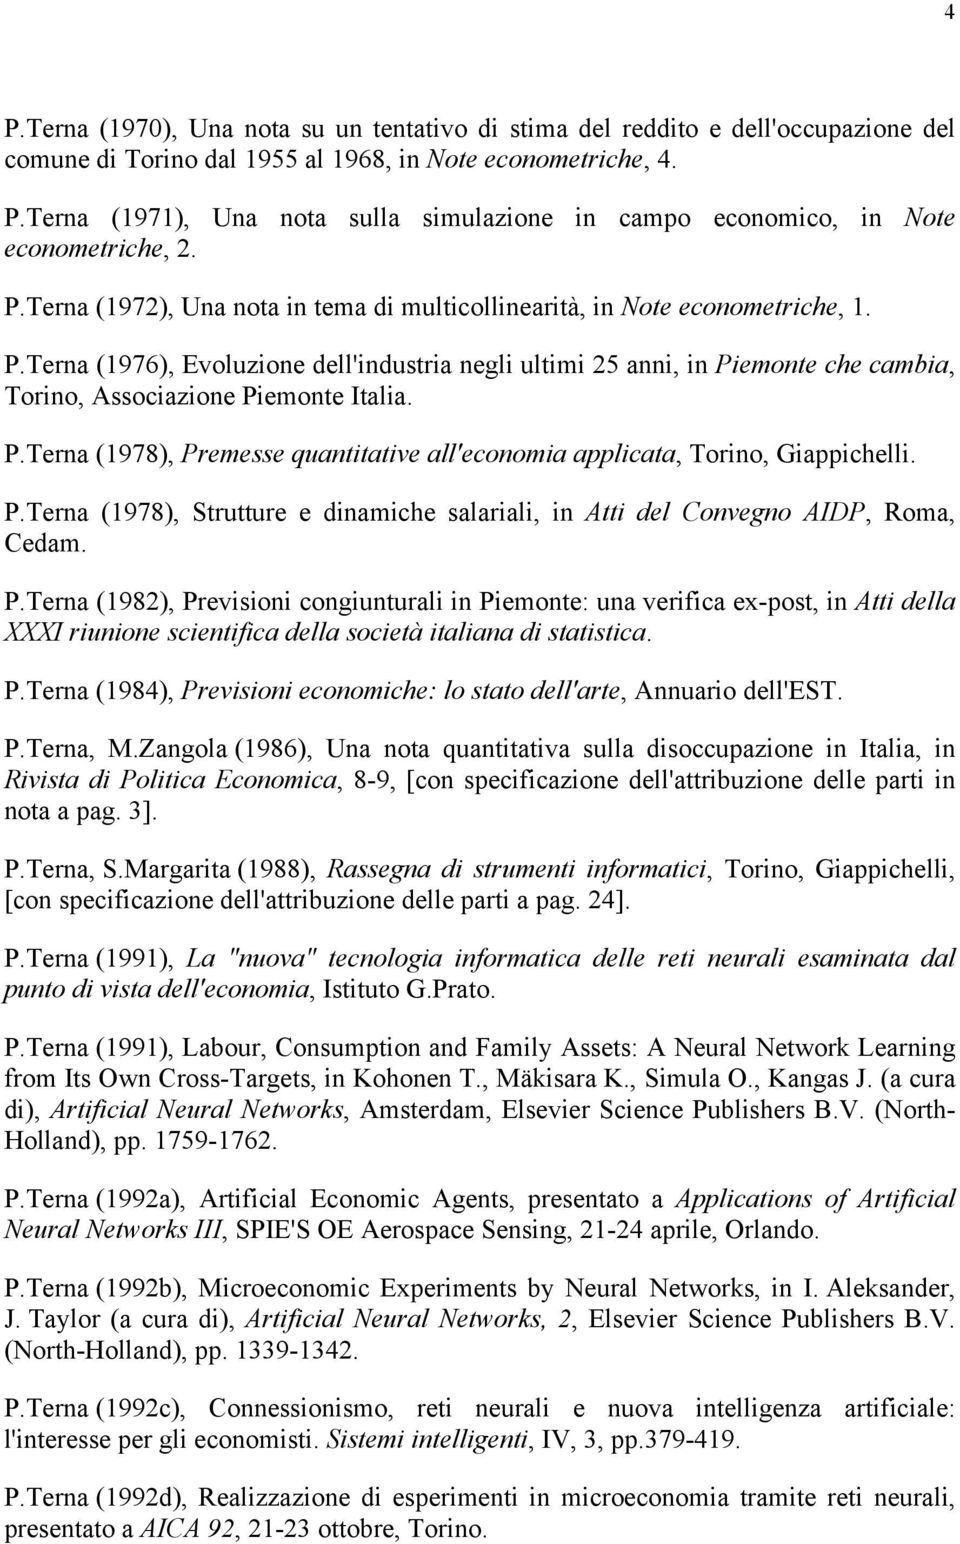 Terna (1976), Evoluzione dell'industria negli ultimi 25 anni, in Piemonte che cambia, Torino, Associazione Piemonte Italia. P.Terna (1978), Premesse quantitative all'economia applicata, Torino, Giappichelli.